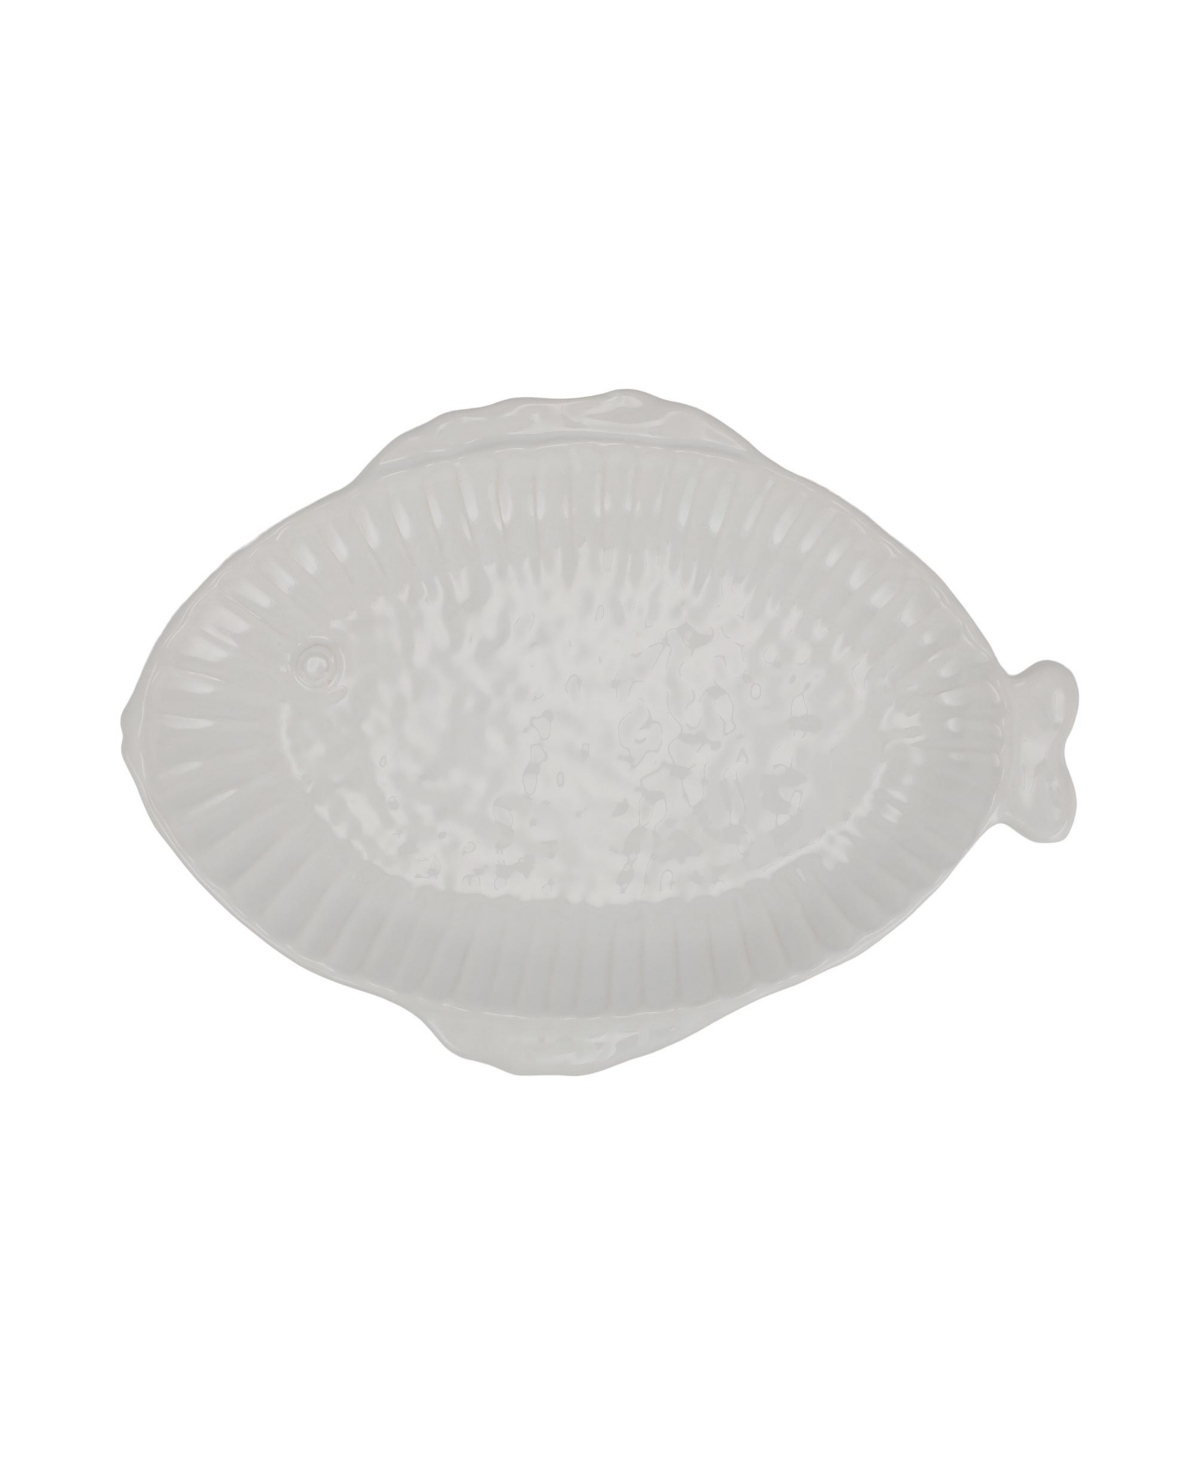 Vietri Pesce Serena Small Oval Platter 15.75" In White